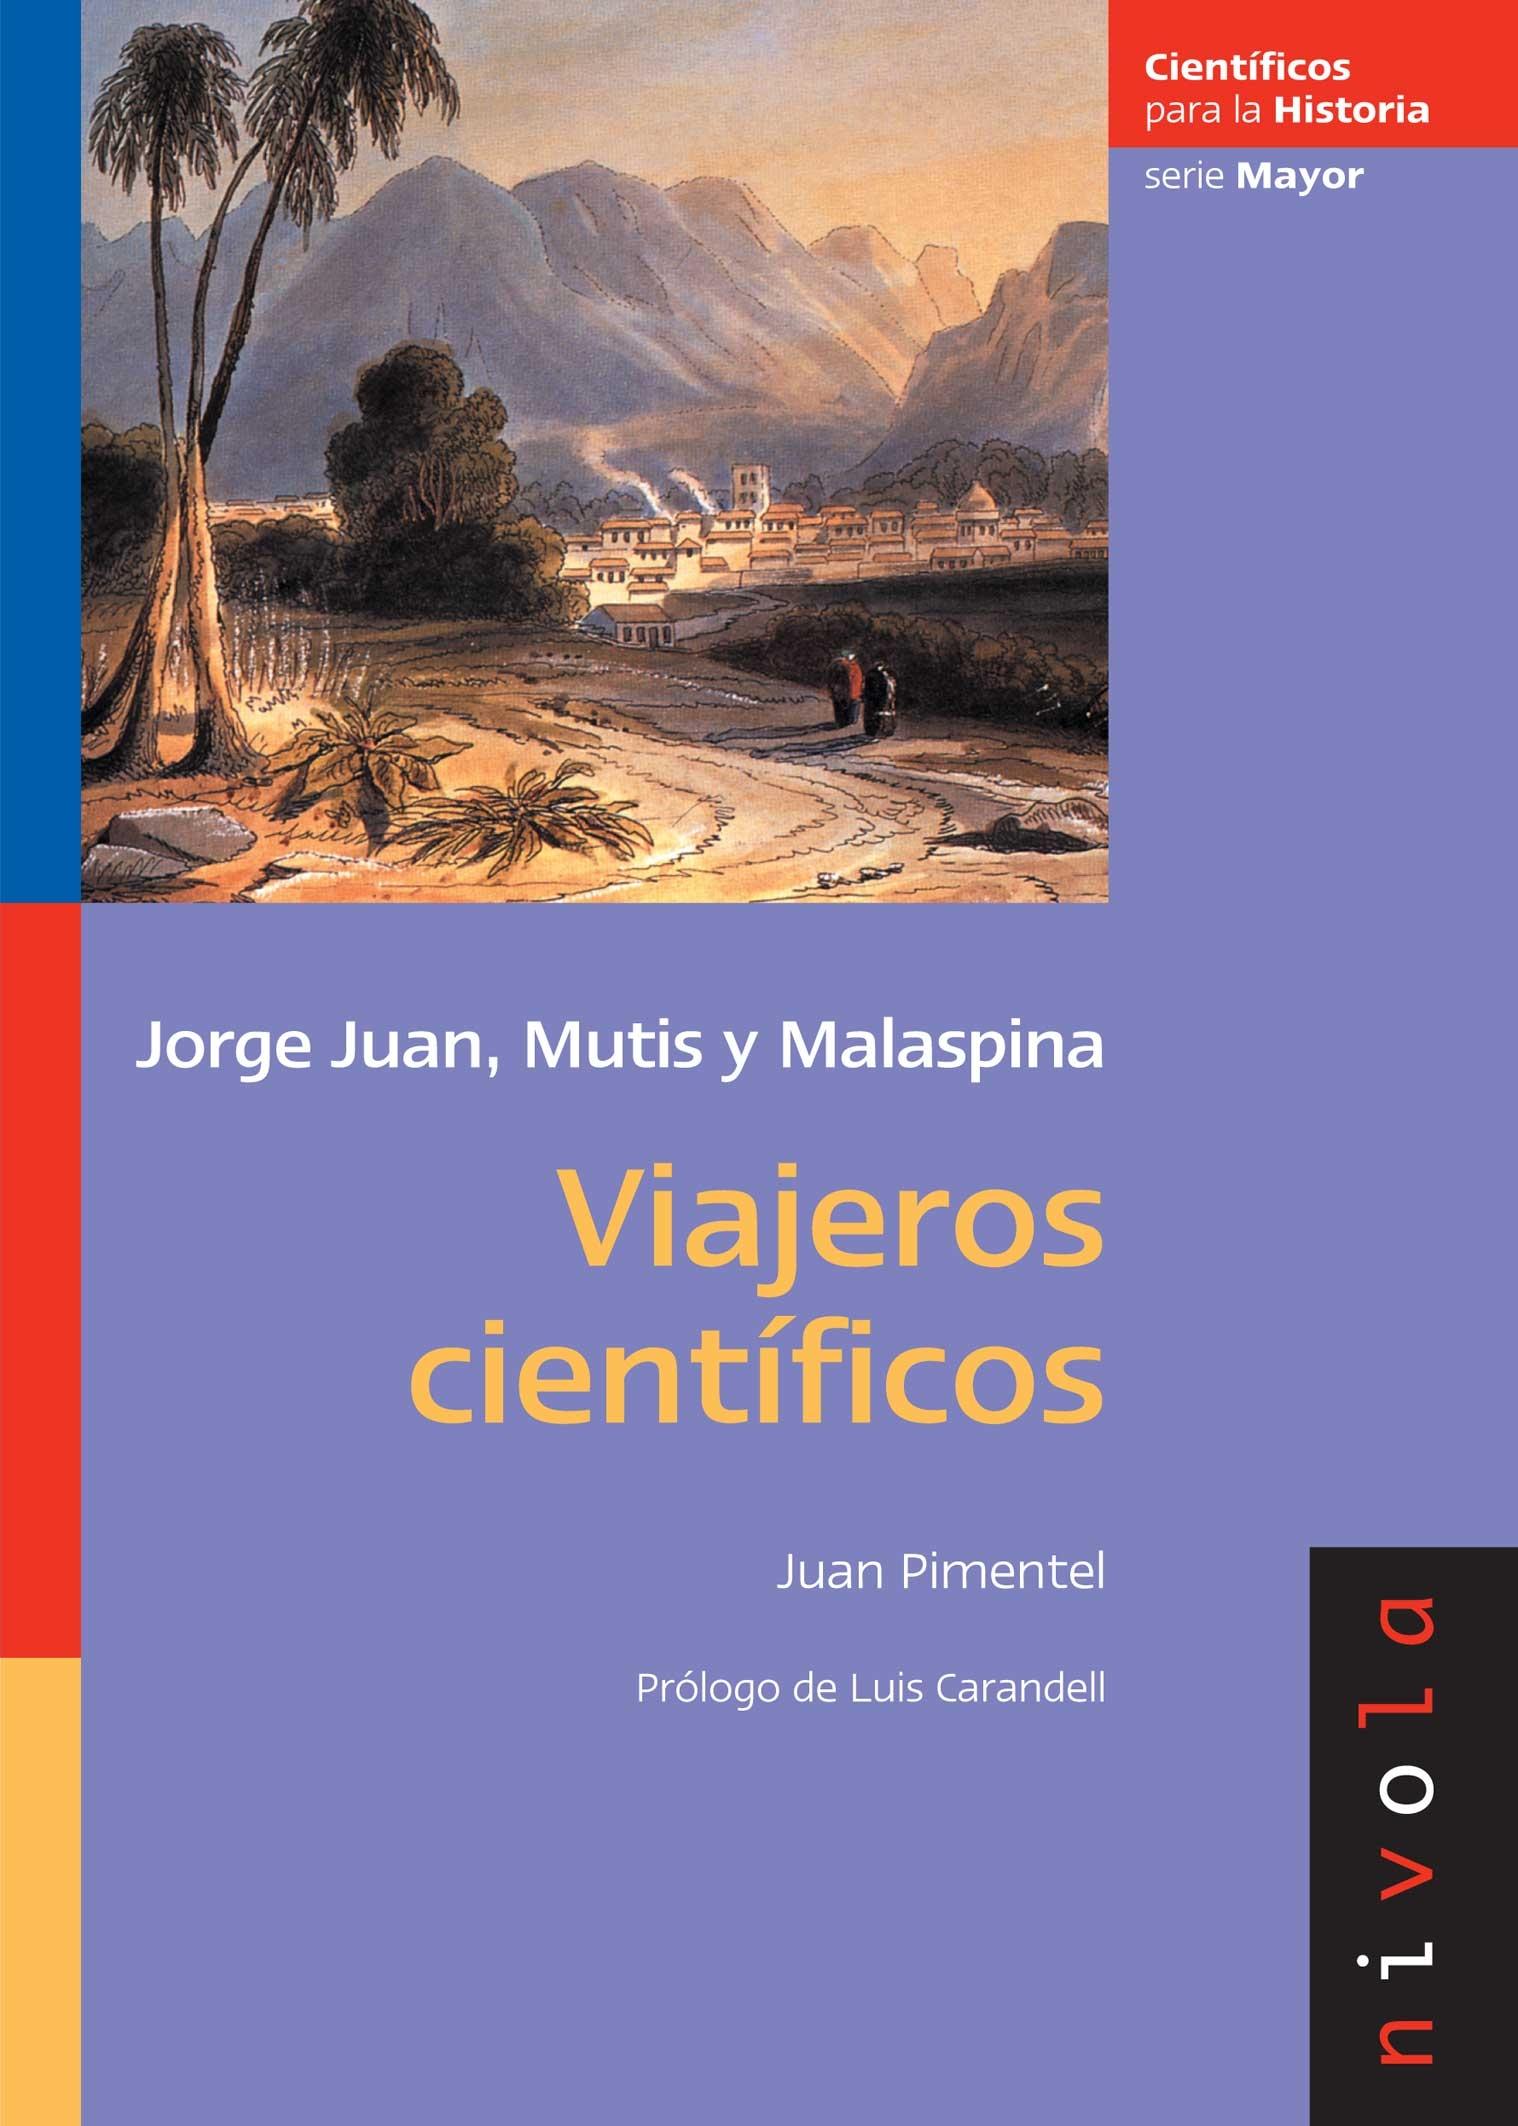 Viajeros científicos "Jorge juan, Mutis y Malaspina". 